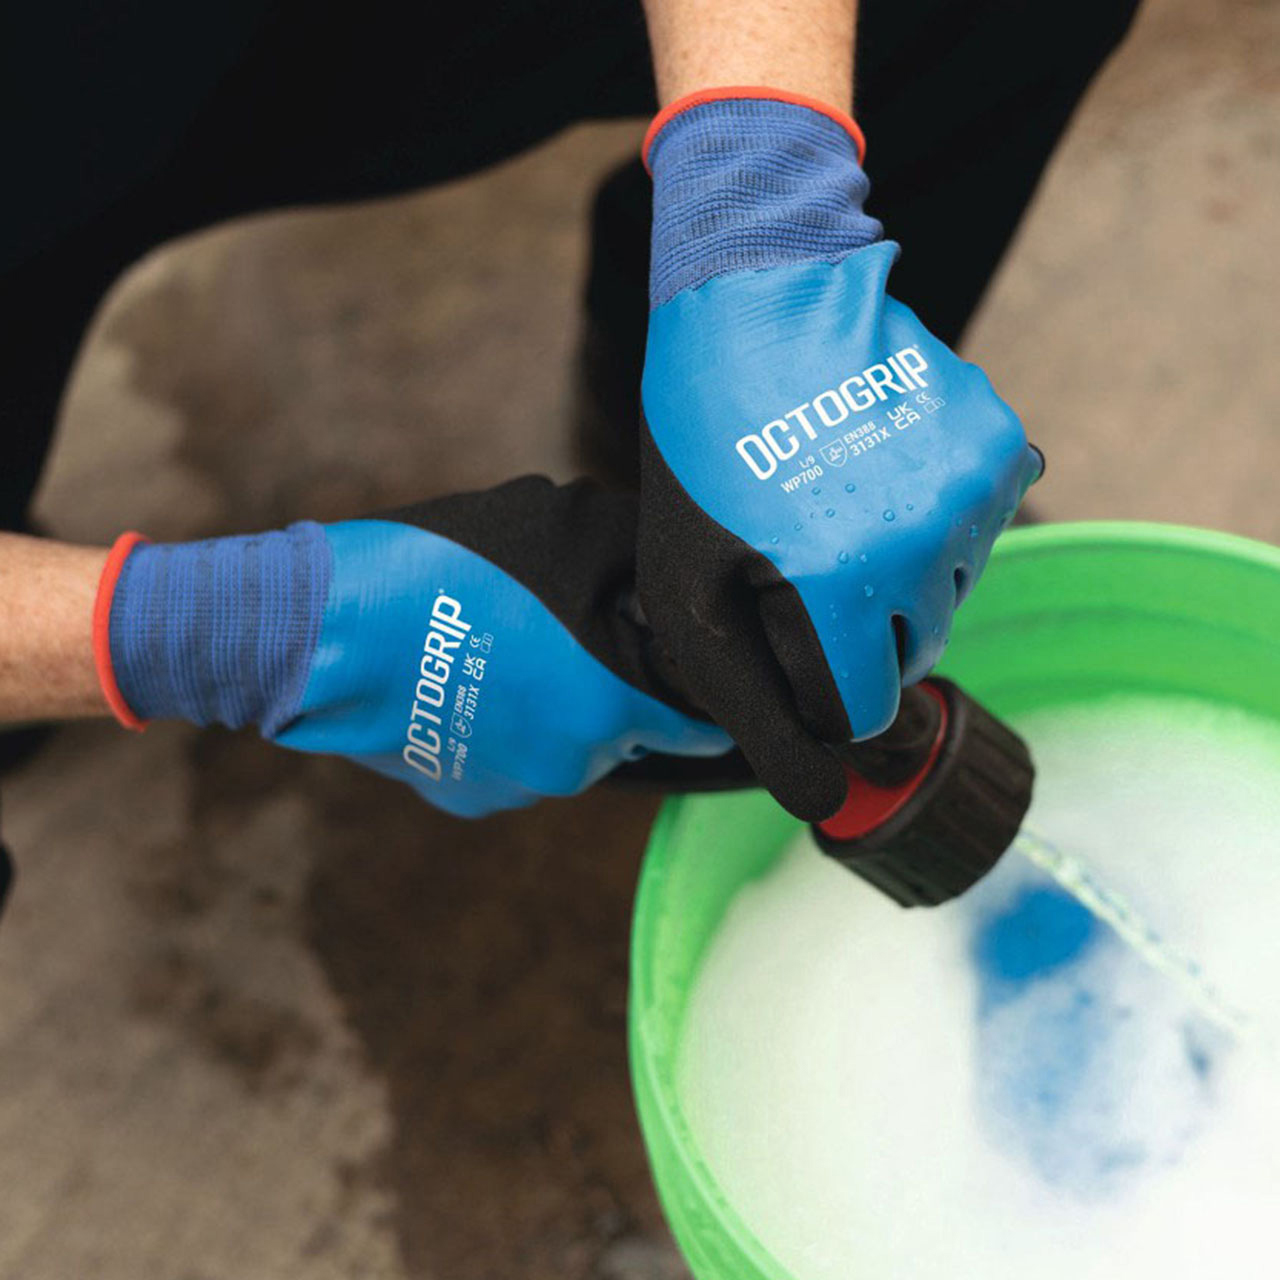 OctoGripT Waterproof Gloves